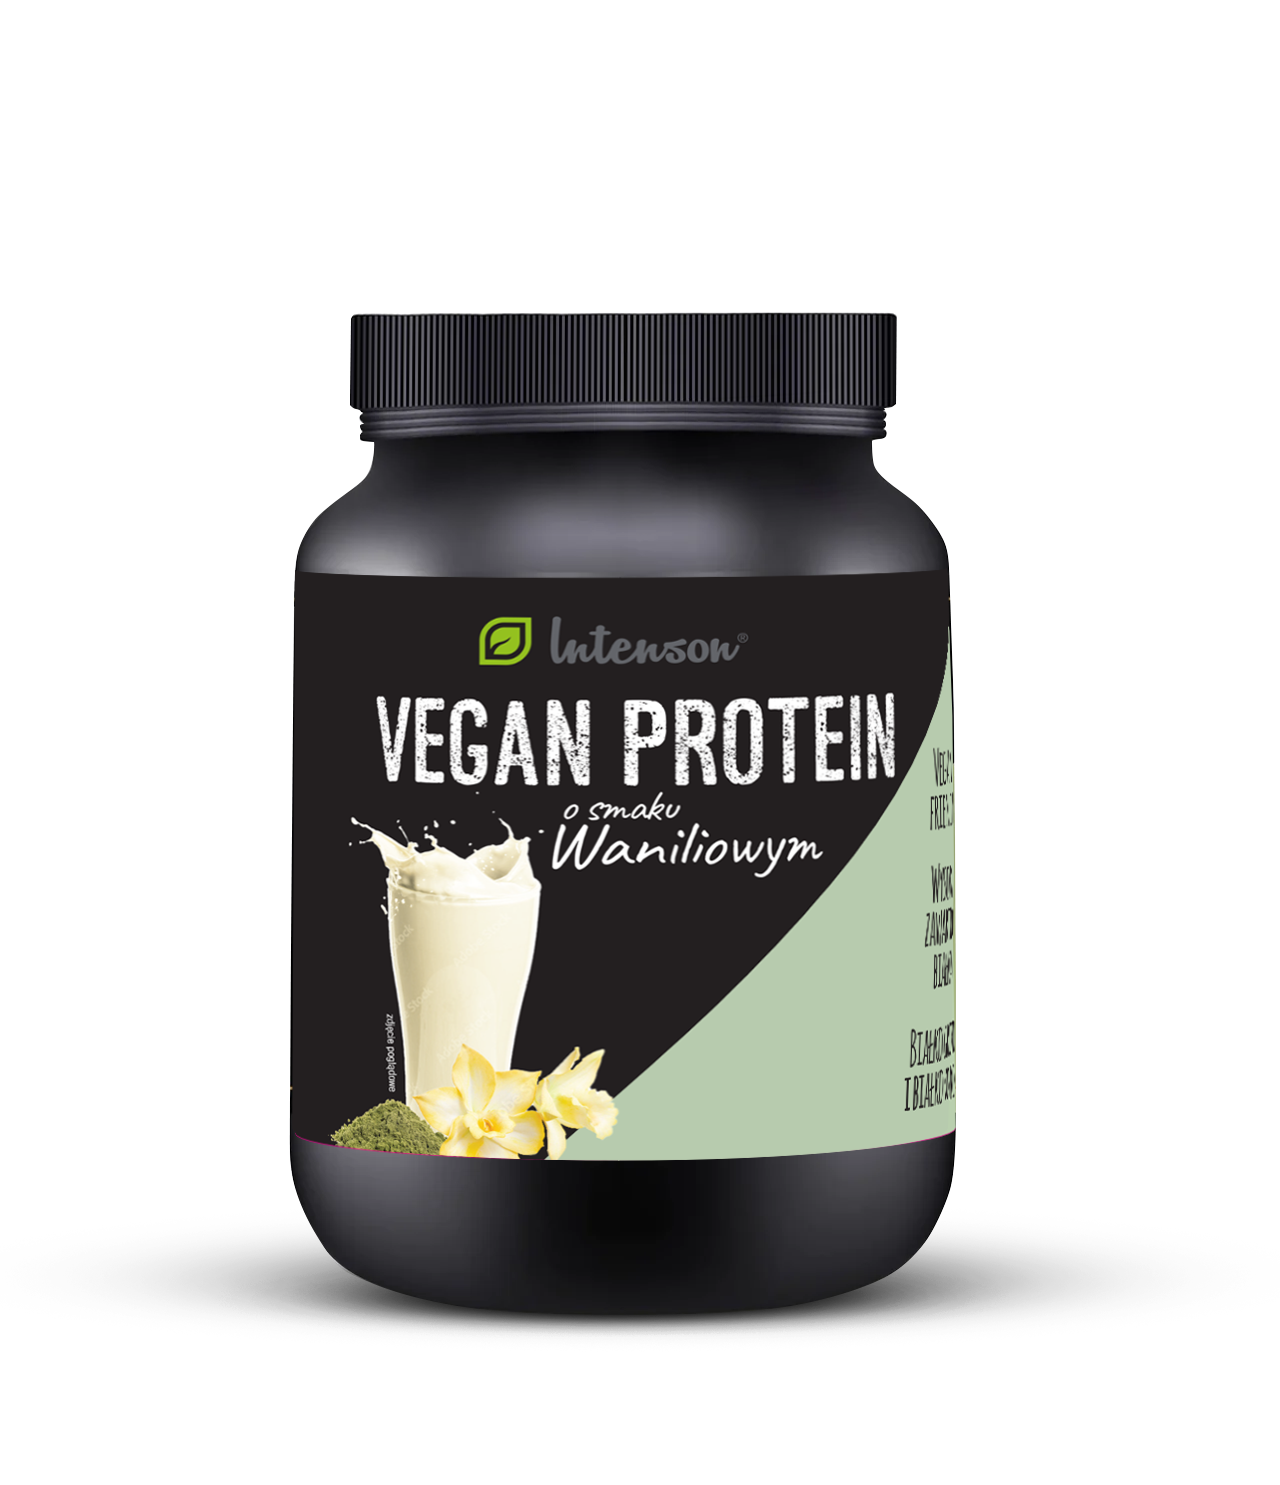 Vegan Protein o smaku waniliowym 600g - Intenson.pl